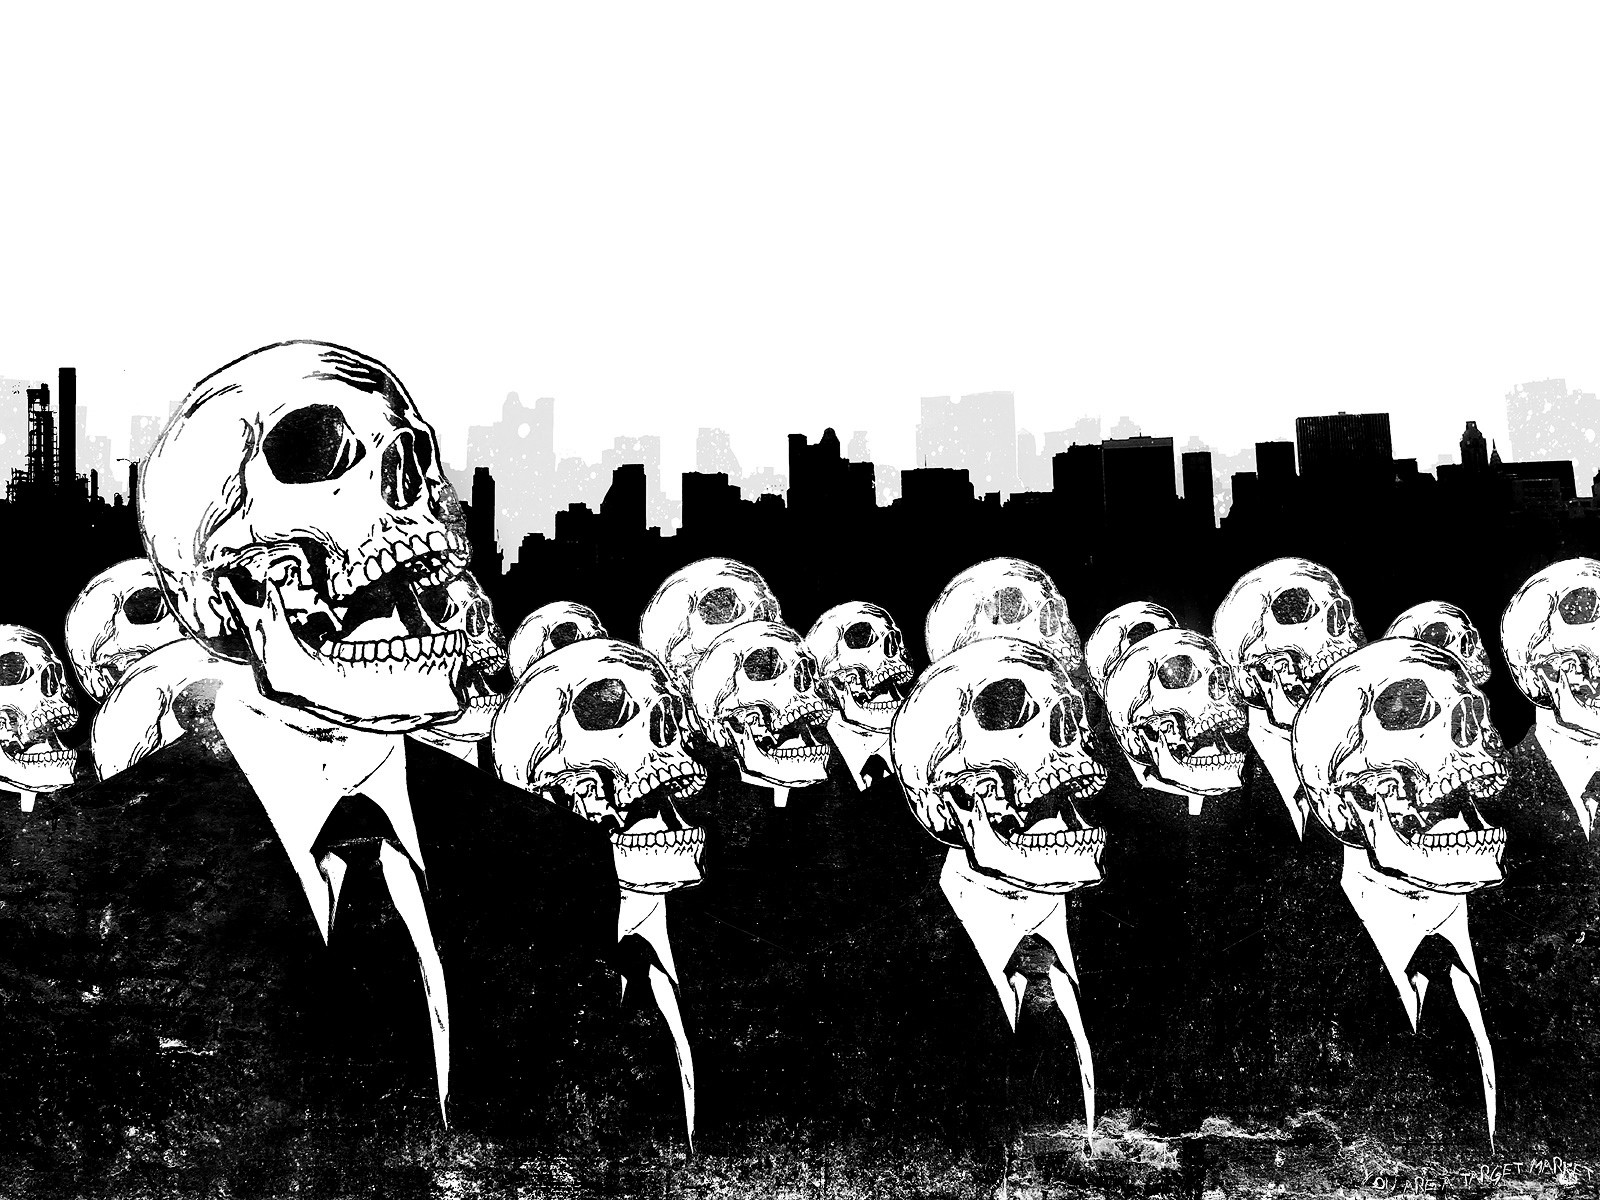 General 1600x1200 Alex Cherry suits artwork monochrome skull grunge skyline digital art cityscape DeviantArt